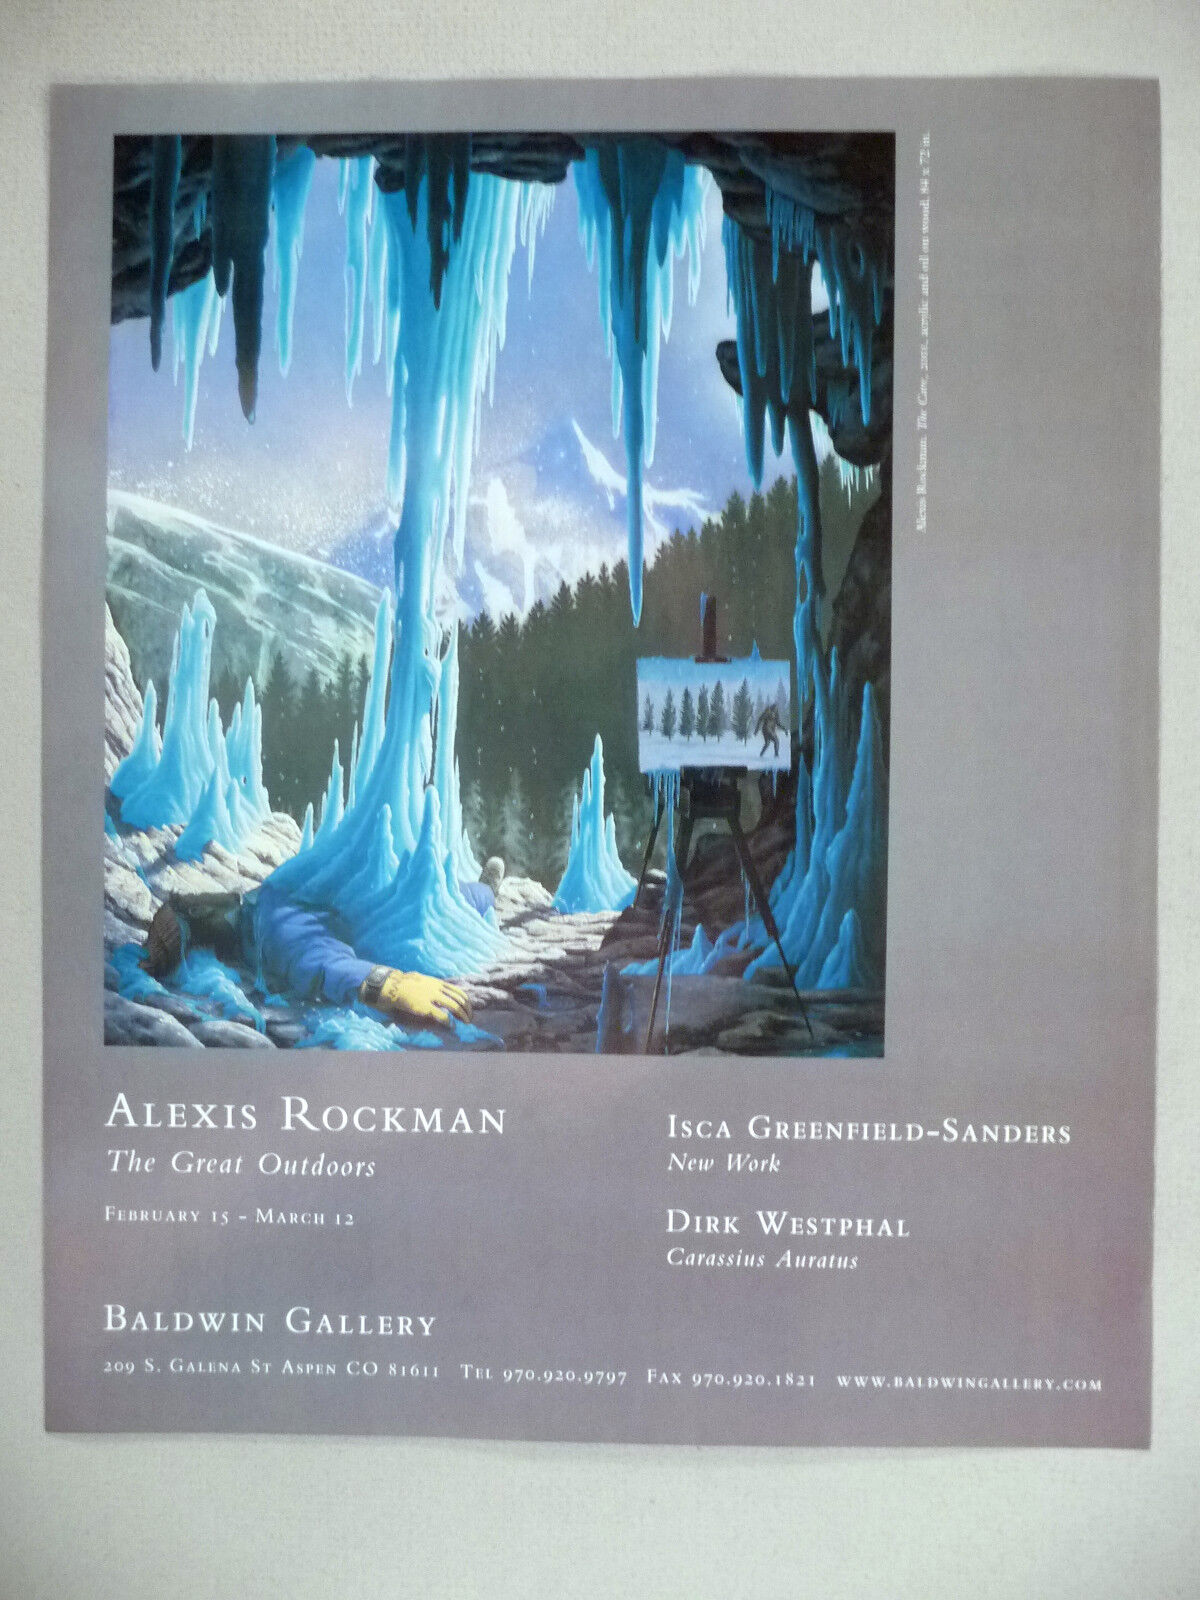 Alexis Rockman Art Gallery Exhibit PRINT AD - 2002